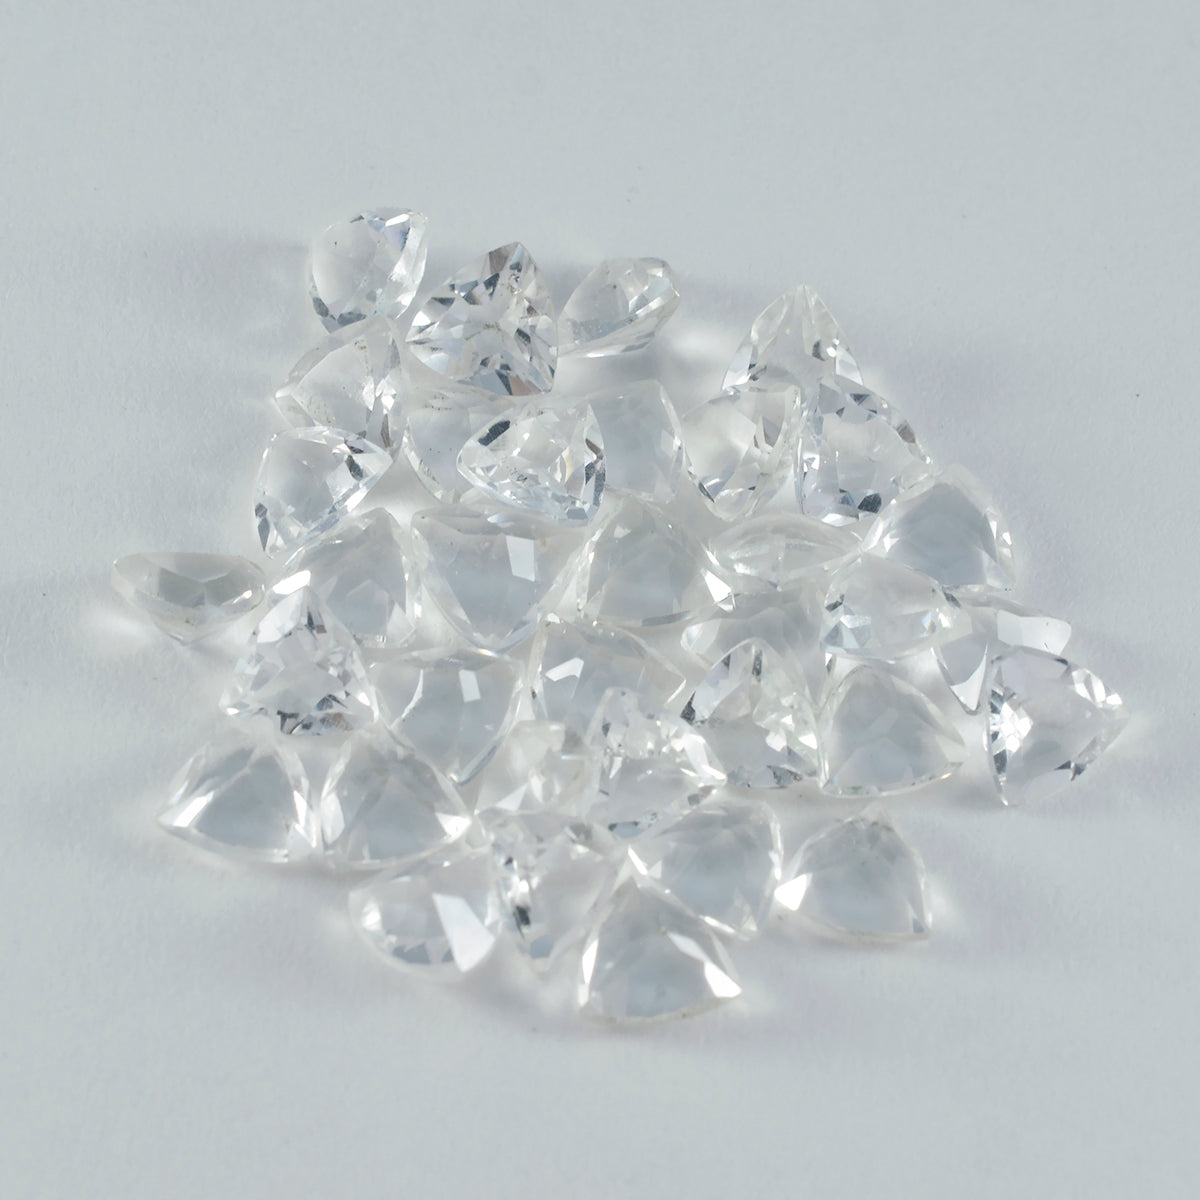 riyogems 1 шт., белый кристалл кварца, граненый 6x6 мм, форма триллиона, сладкий качественный камень